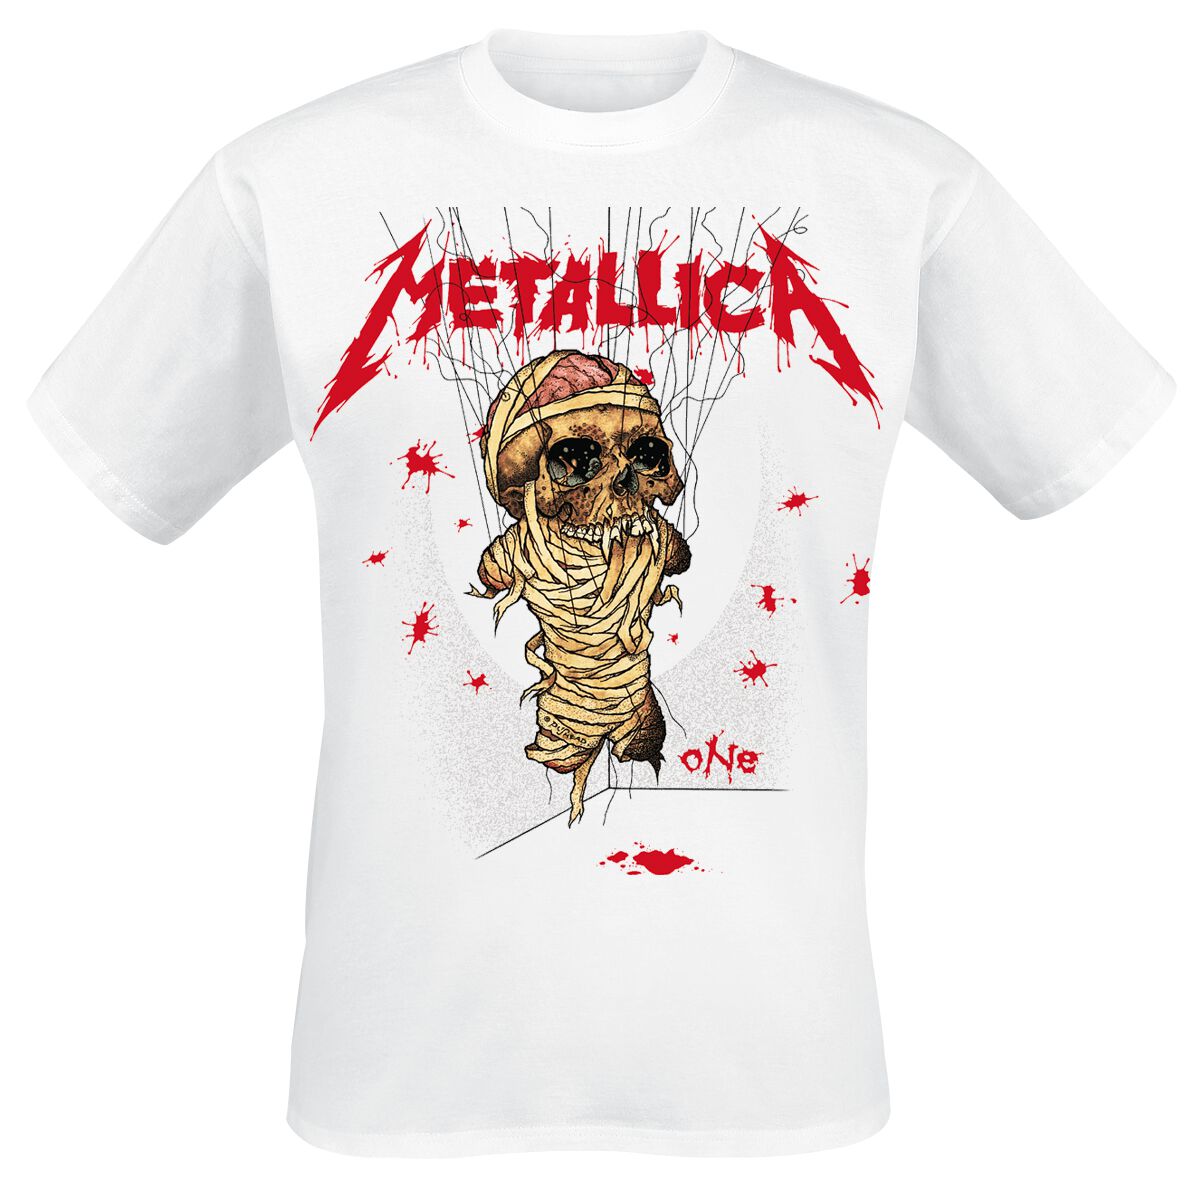 Metallica T-Shirt - One Landmine - S bis 3XL - für Männer - Größe XL - weiß  - Lizenziertes Merchandise!